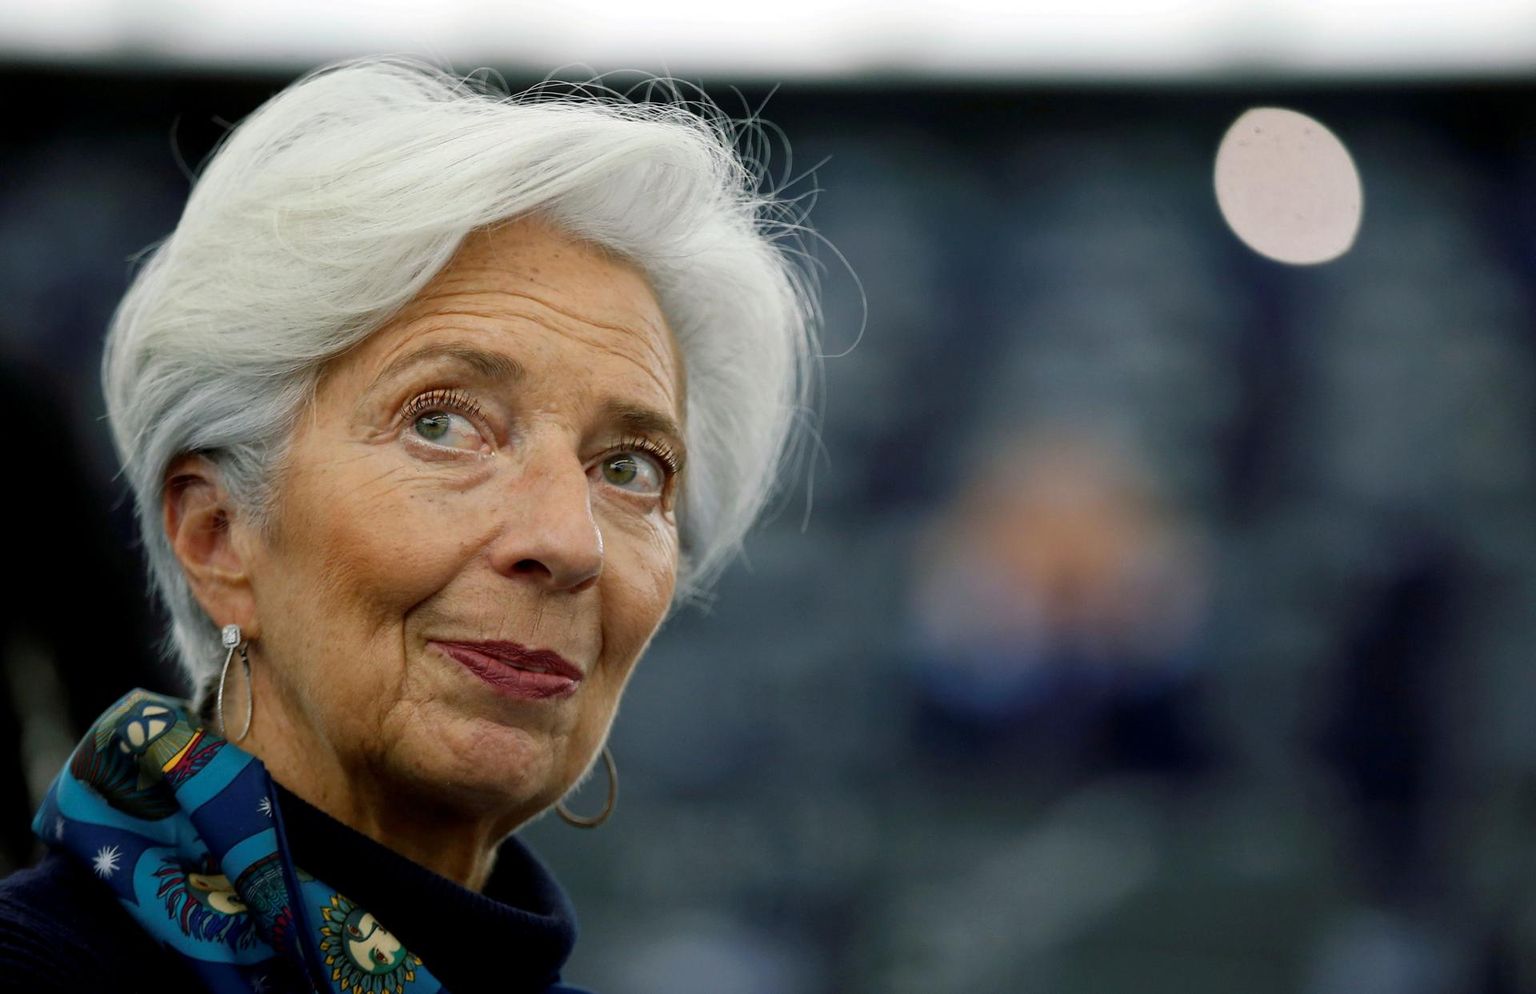 Saksamaa ootab Euroopa Keskpanga presidendilt Christine Lagarde’ilt üksikasjalikku vastust, kuidas hindab keskpank oma varaostukava proportsionaalsust. 